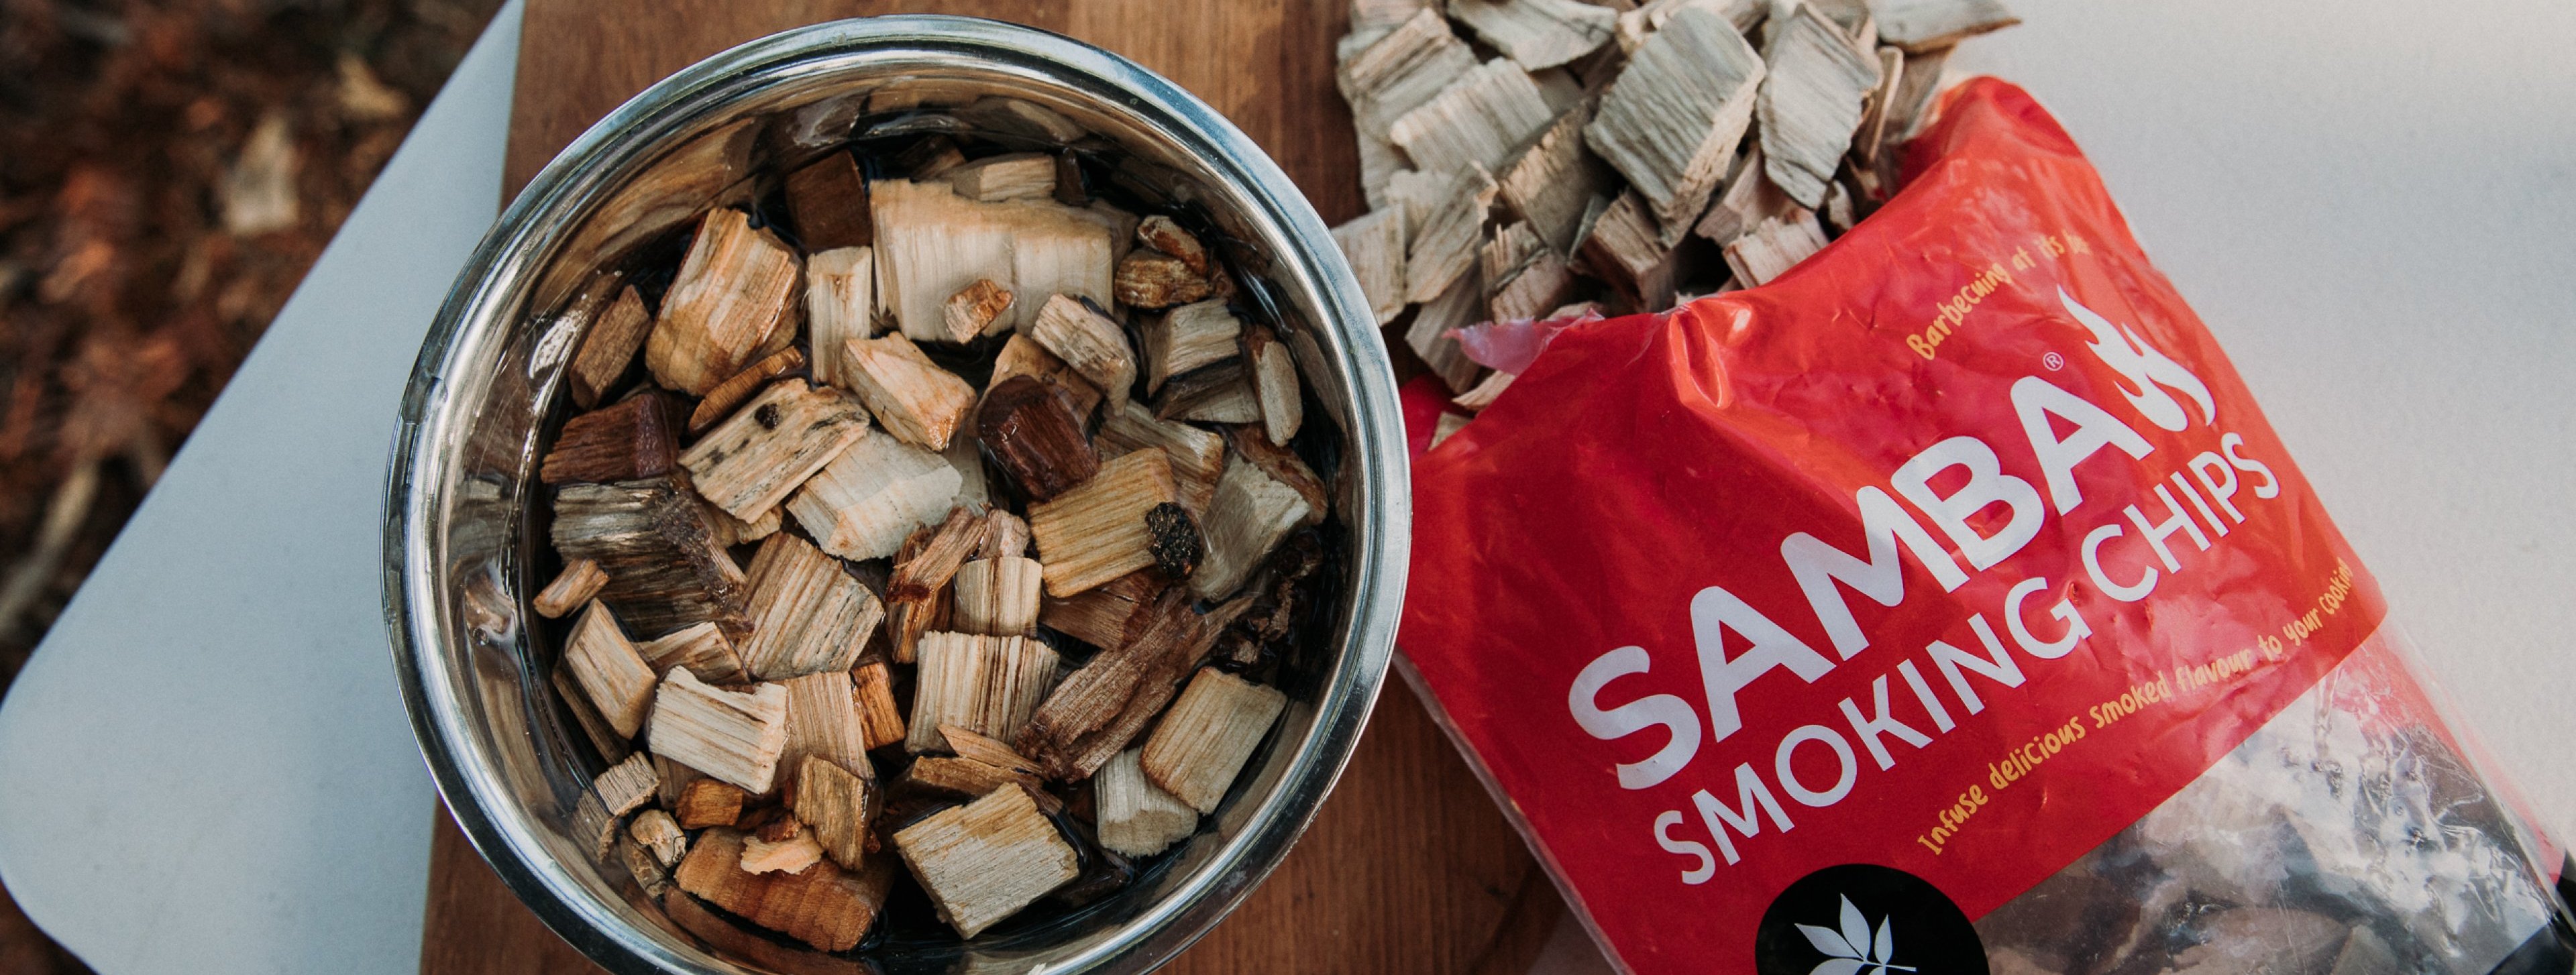 SSSmokin! Samba’s Smoking Chips intensifies smoking BBQ flavour